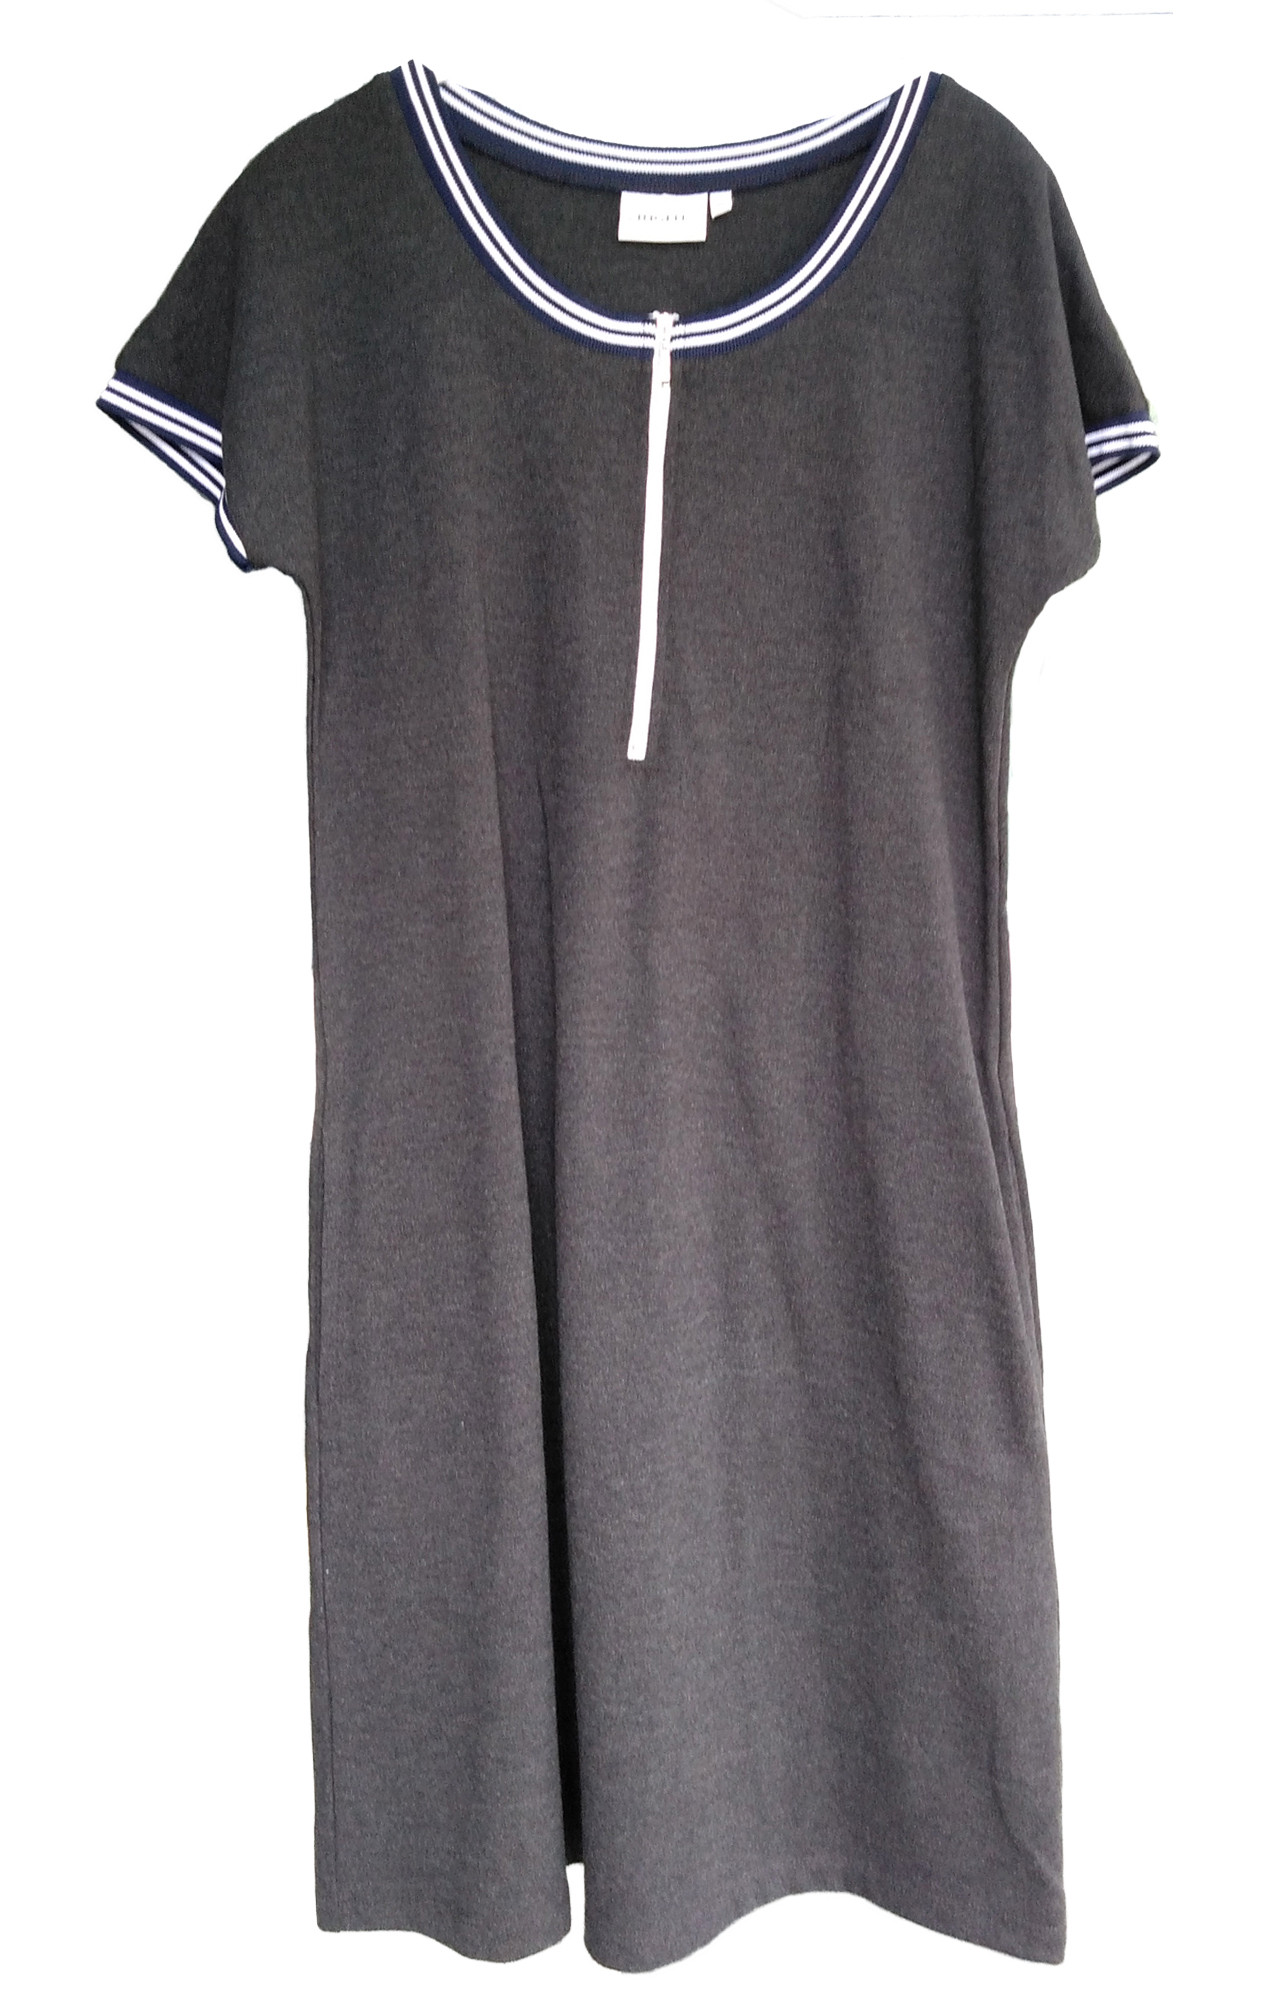 Ringella Damen Nachthemd Hauskleid Kurzarm Anthrazit Gr. 38 Baumwolle Mustera